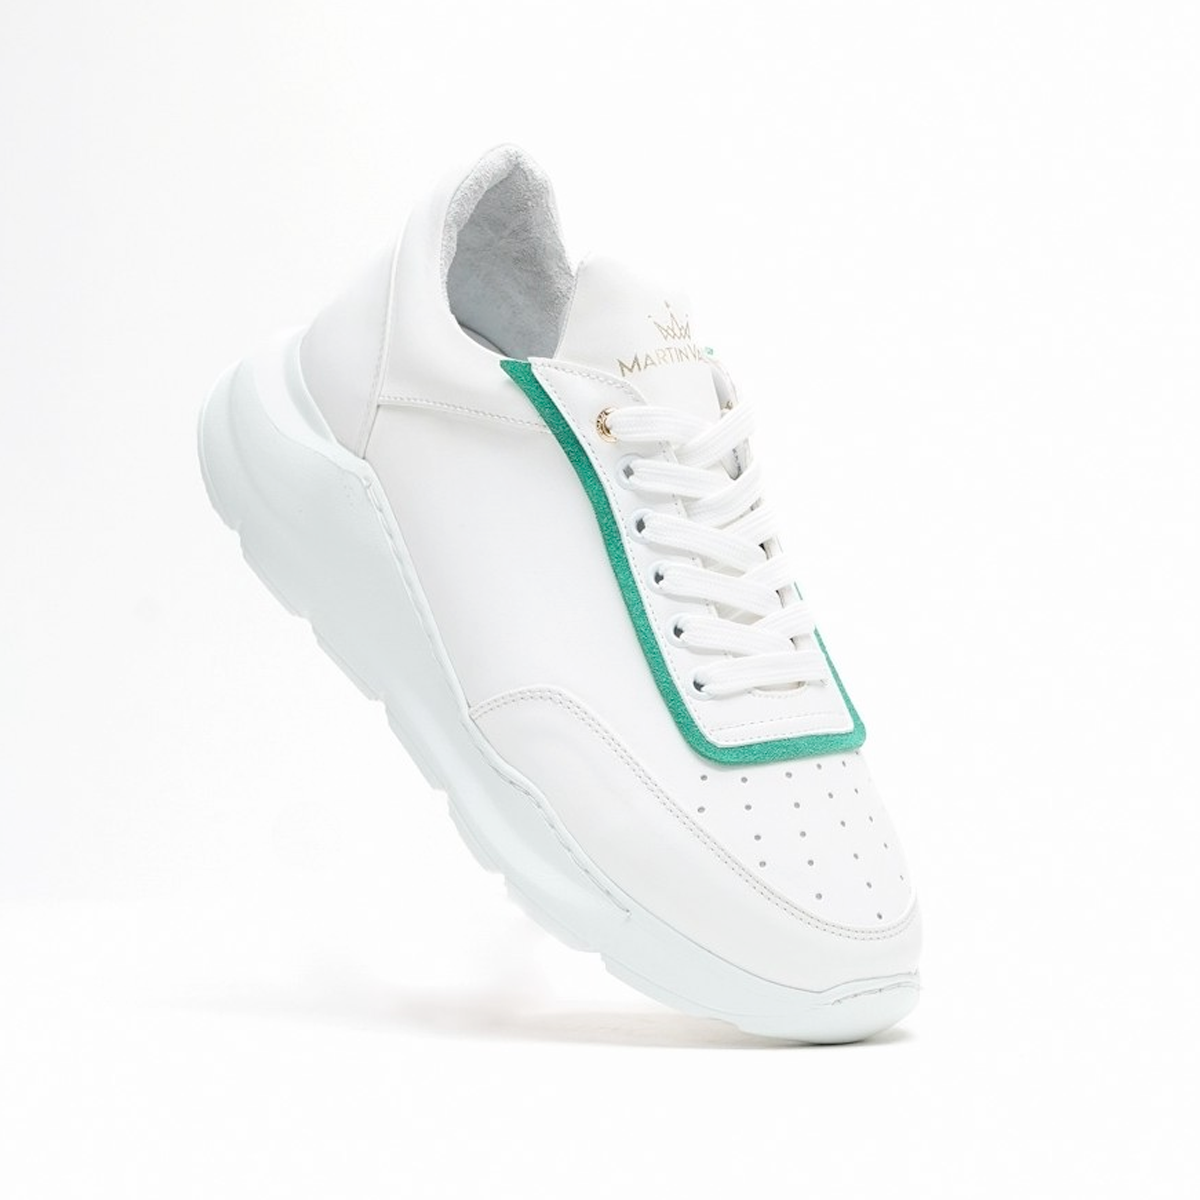 Herren Chunky Sneakers mit Grüner Linie in weiss - Weiß